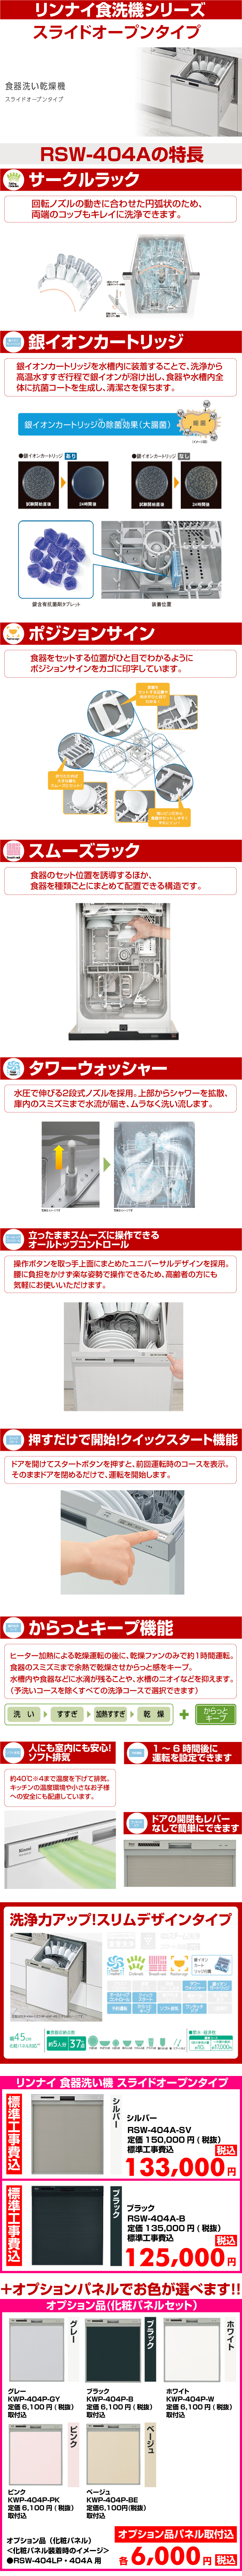 リンナイ食器洗い機 スライドオープンタイプ RSW-404A